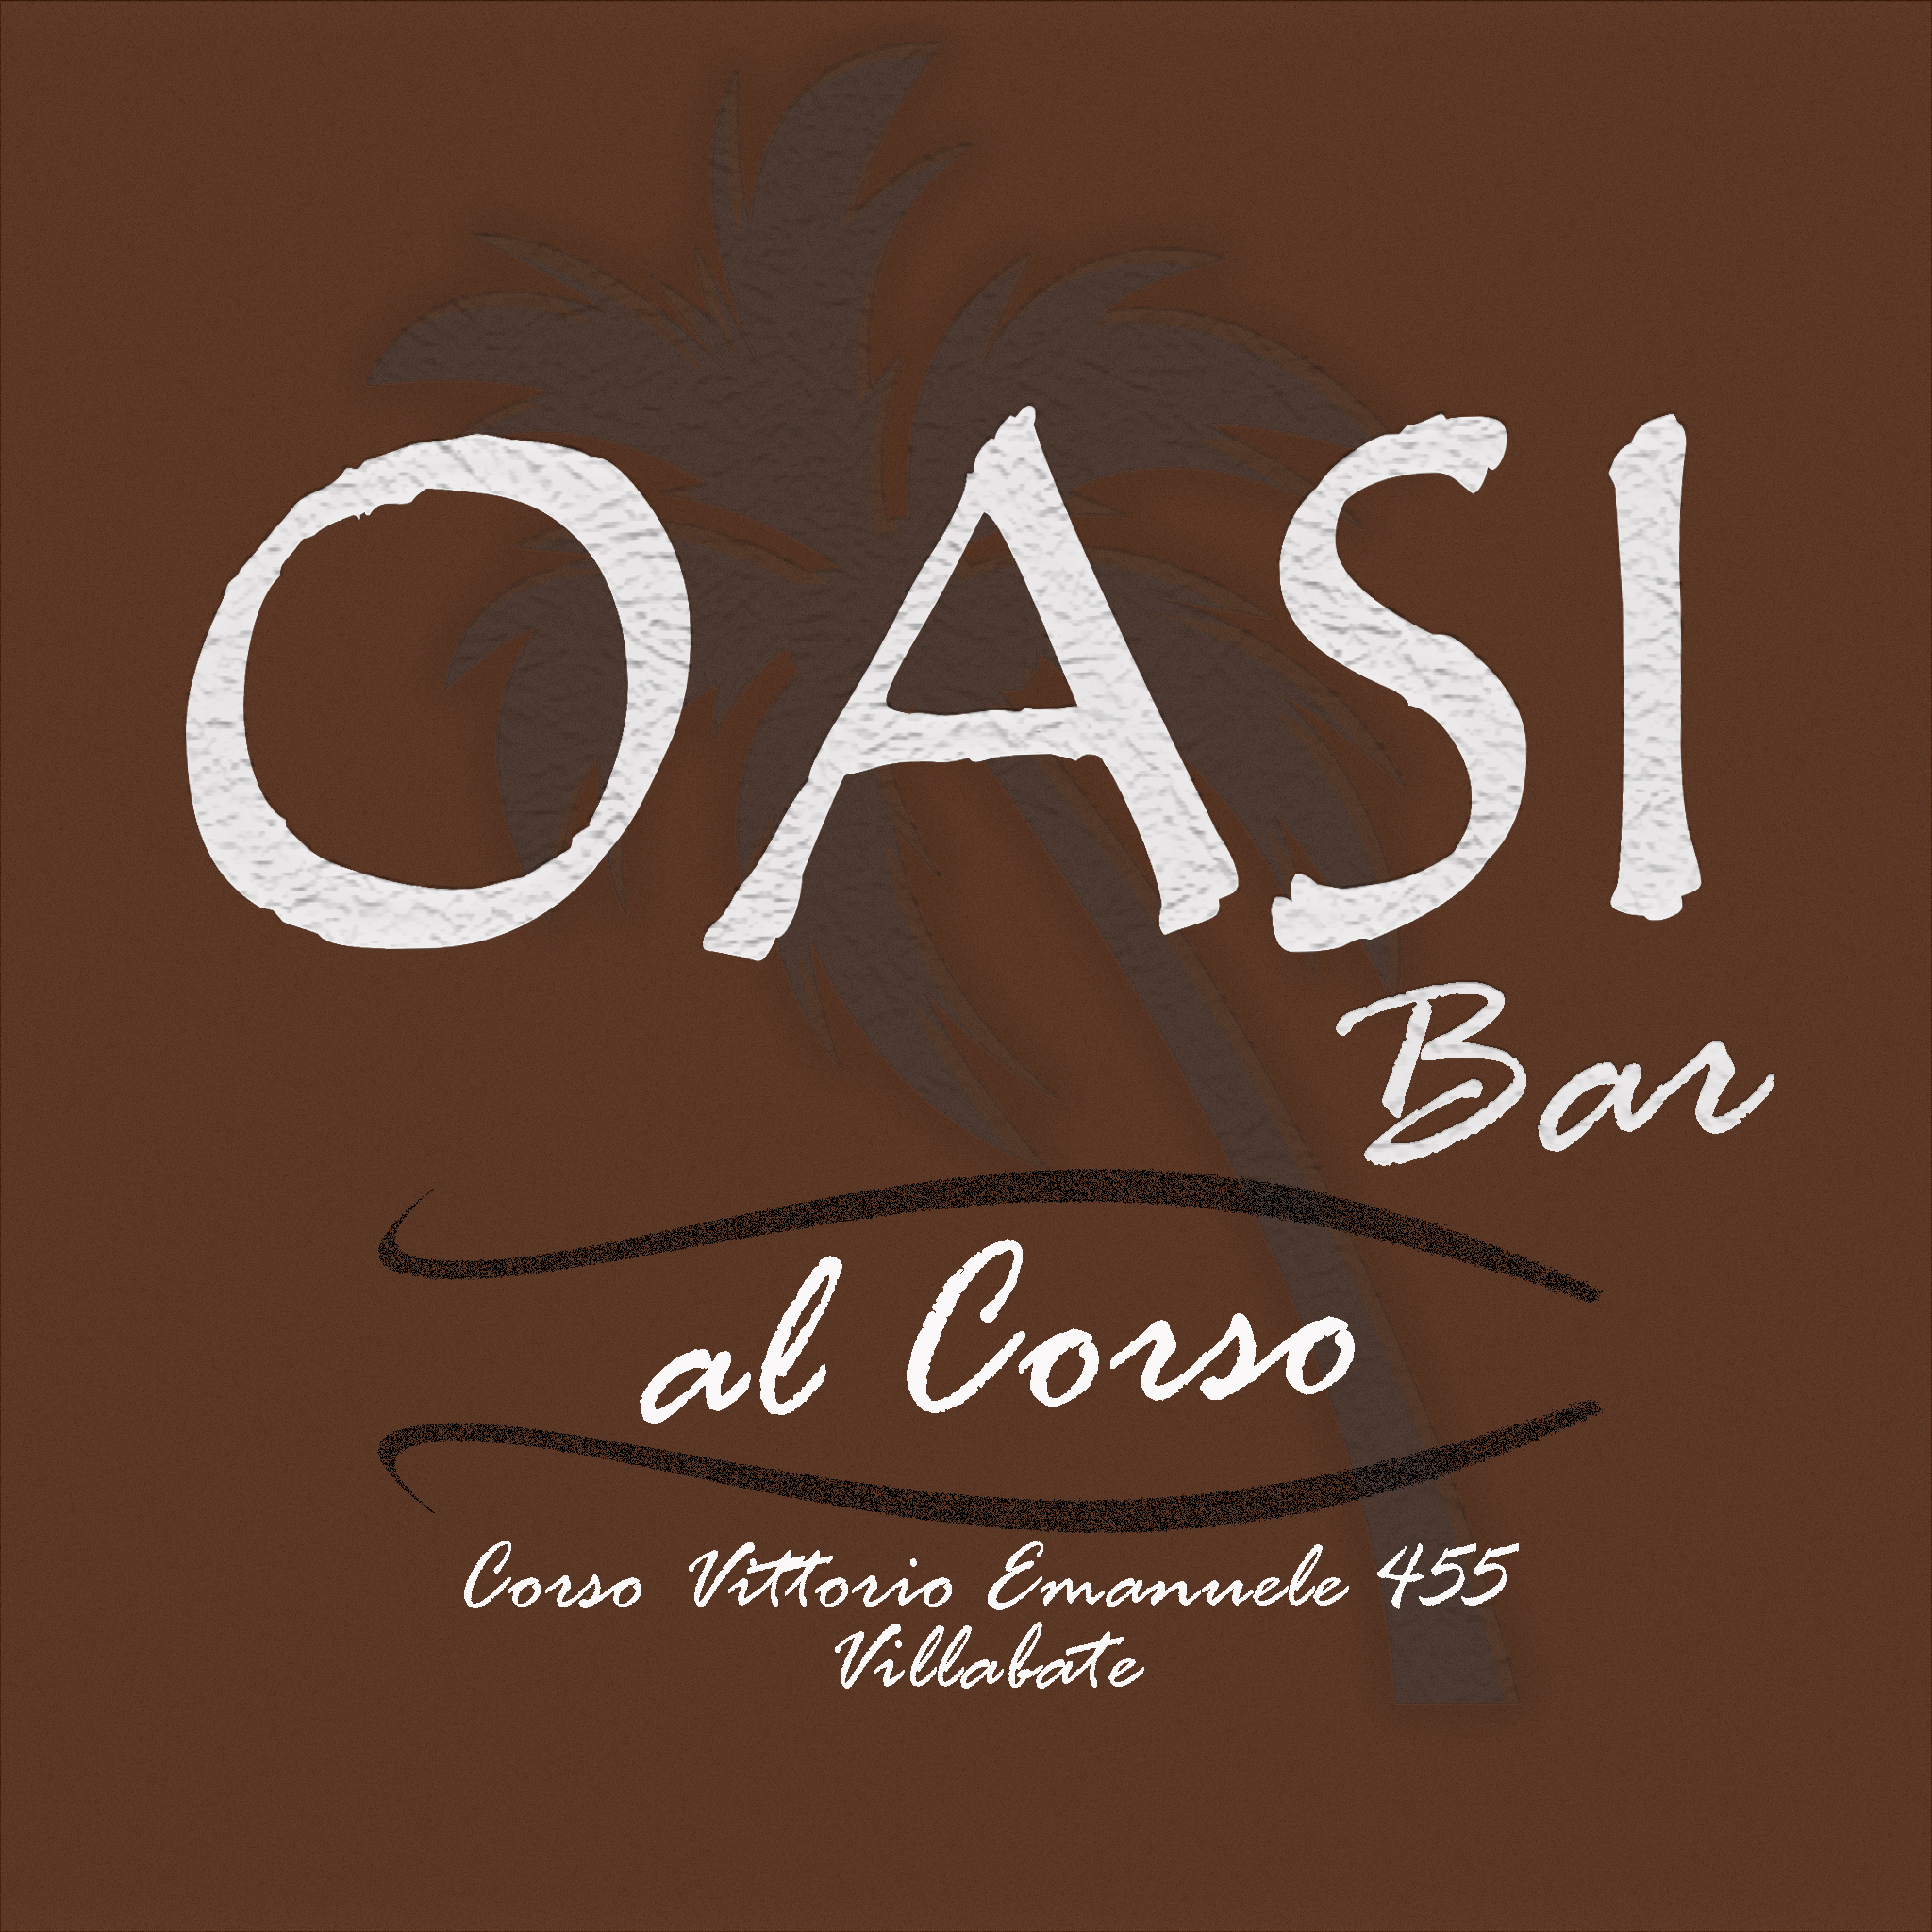 Oasi Bar Al Corso villabate